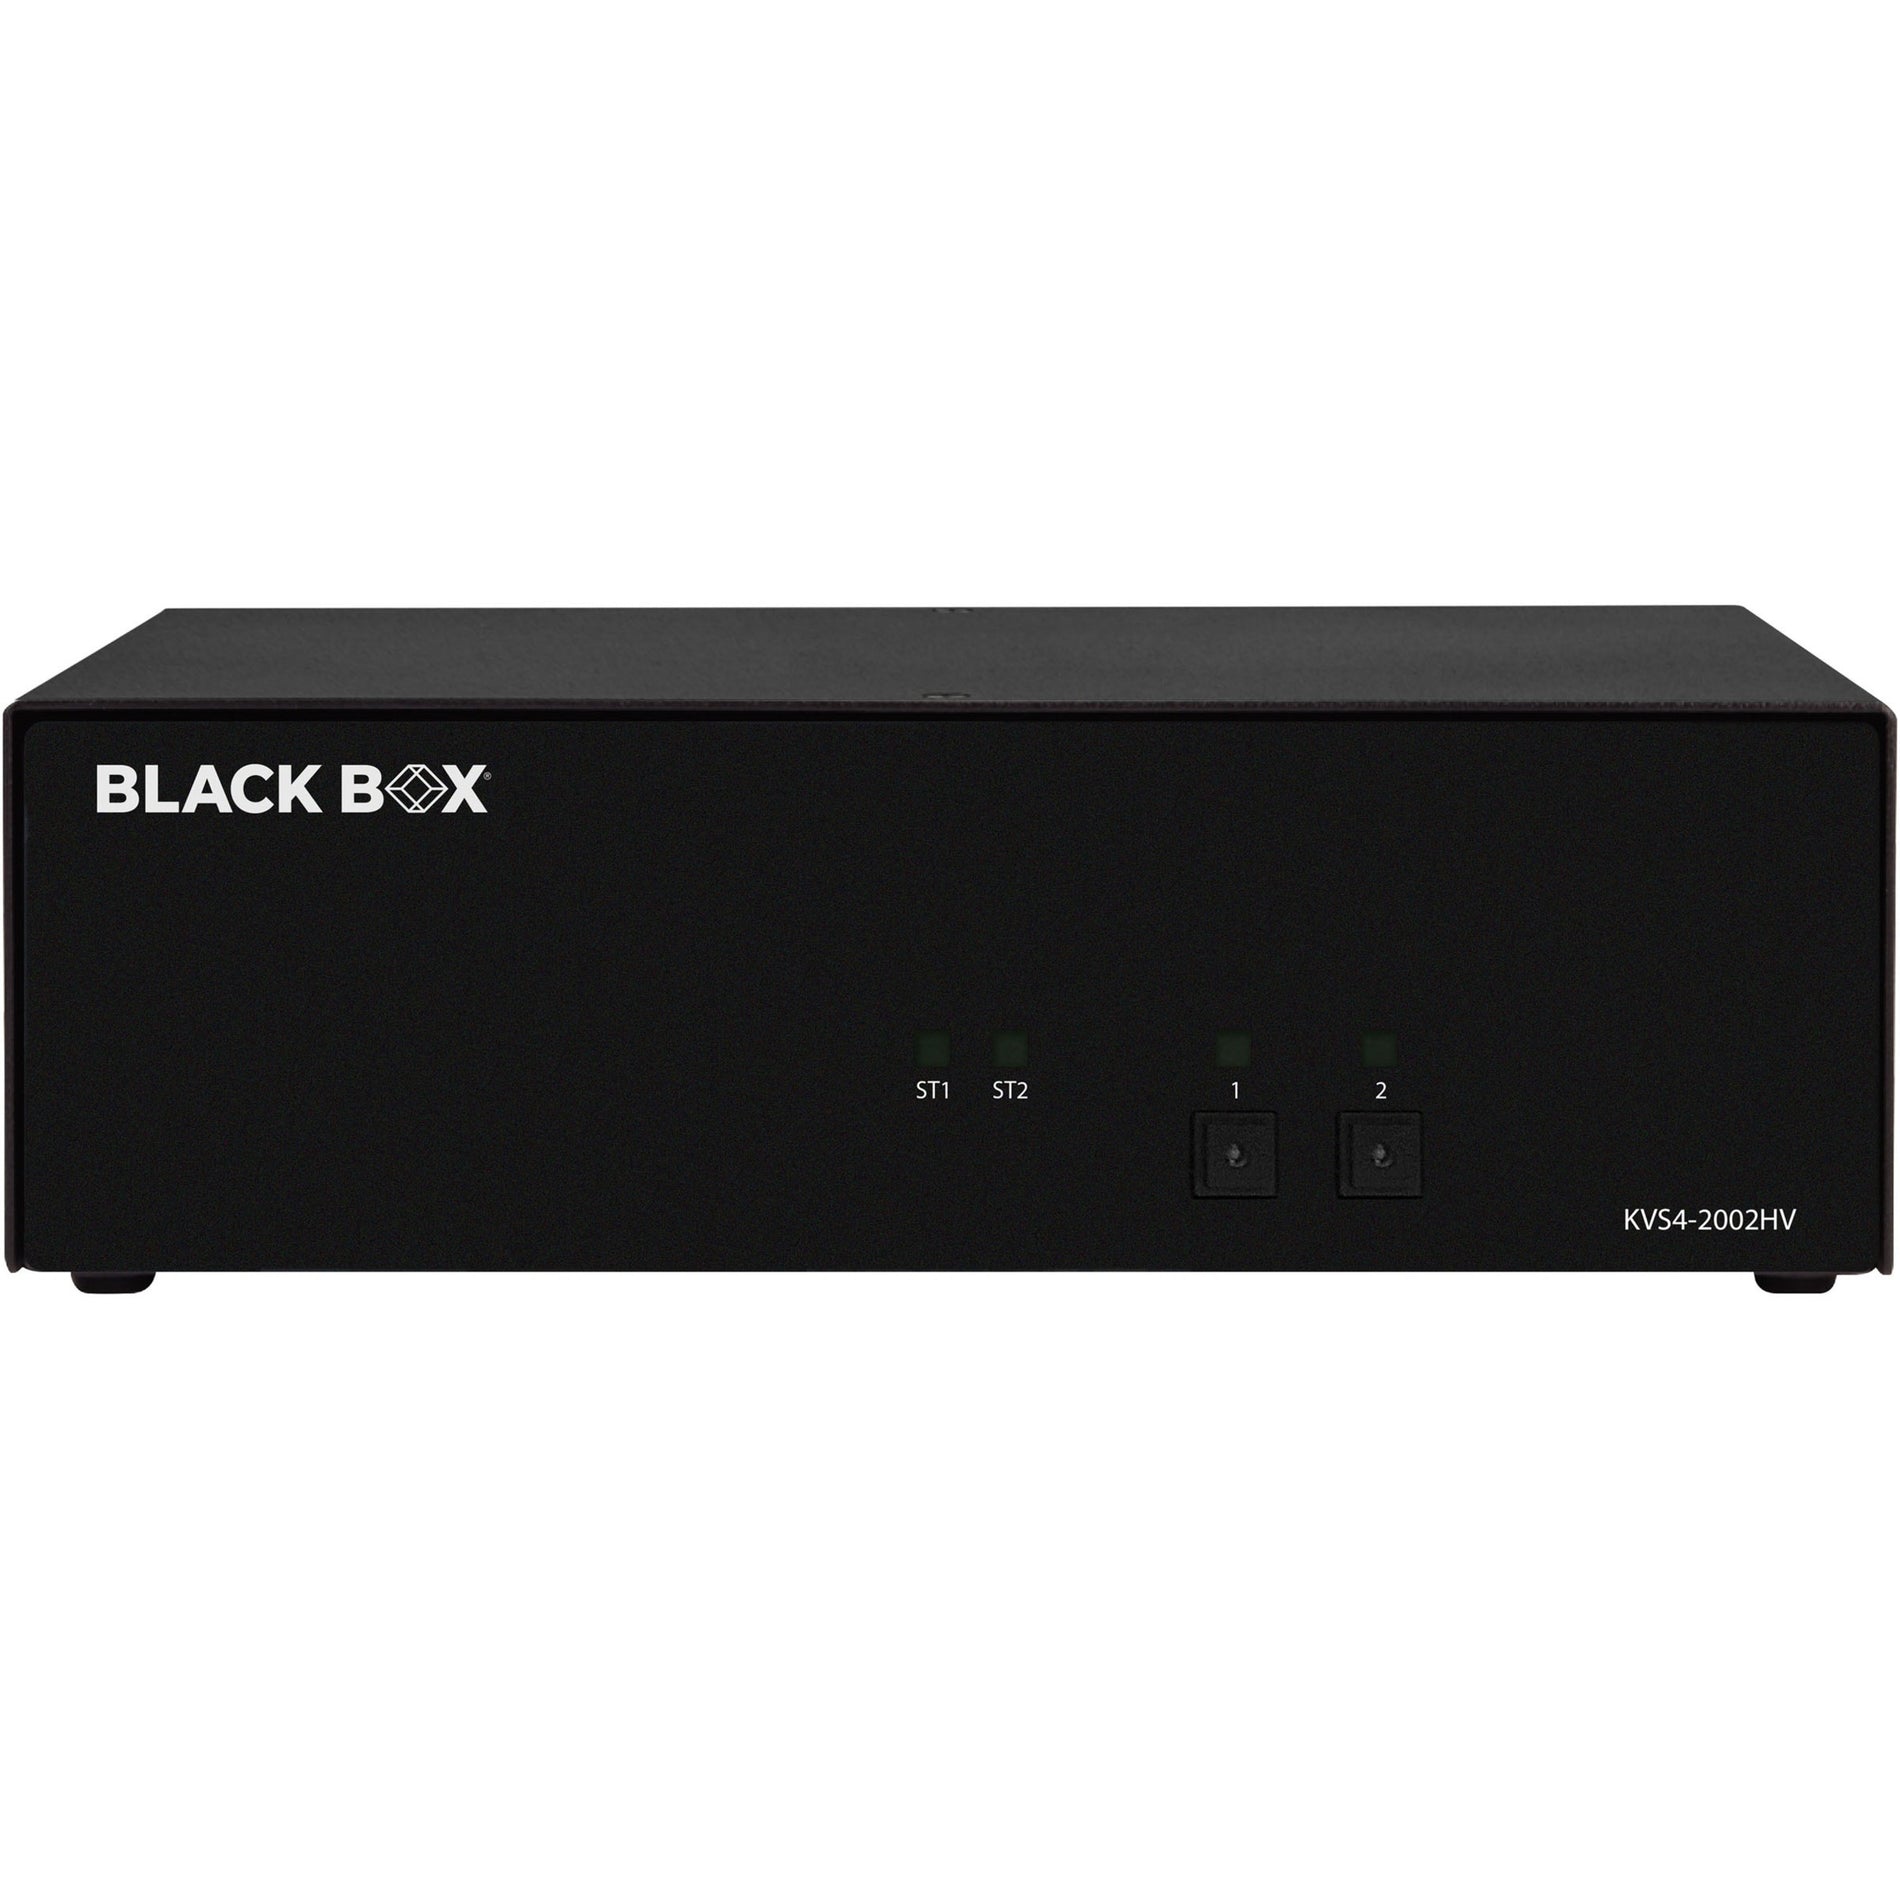 ブラックボックス KVS4-2002HV セキュアKVMスイッチ - FlexPort HDMI/DisplayPort、4 USBポート、3840 x 2160解像度、1年保証